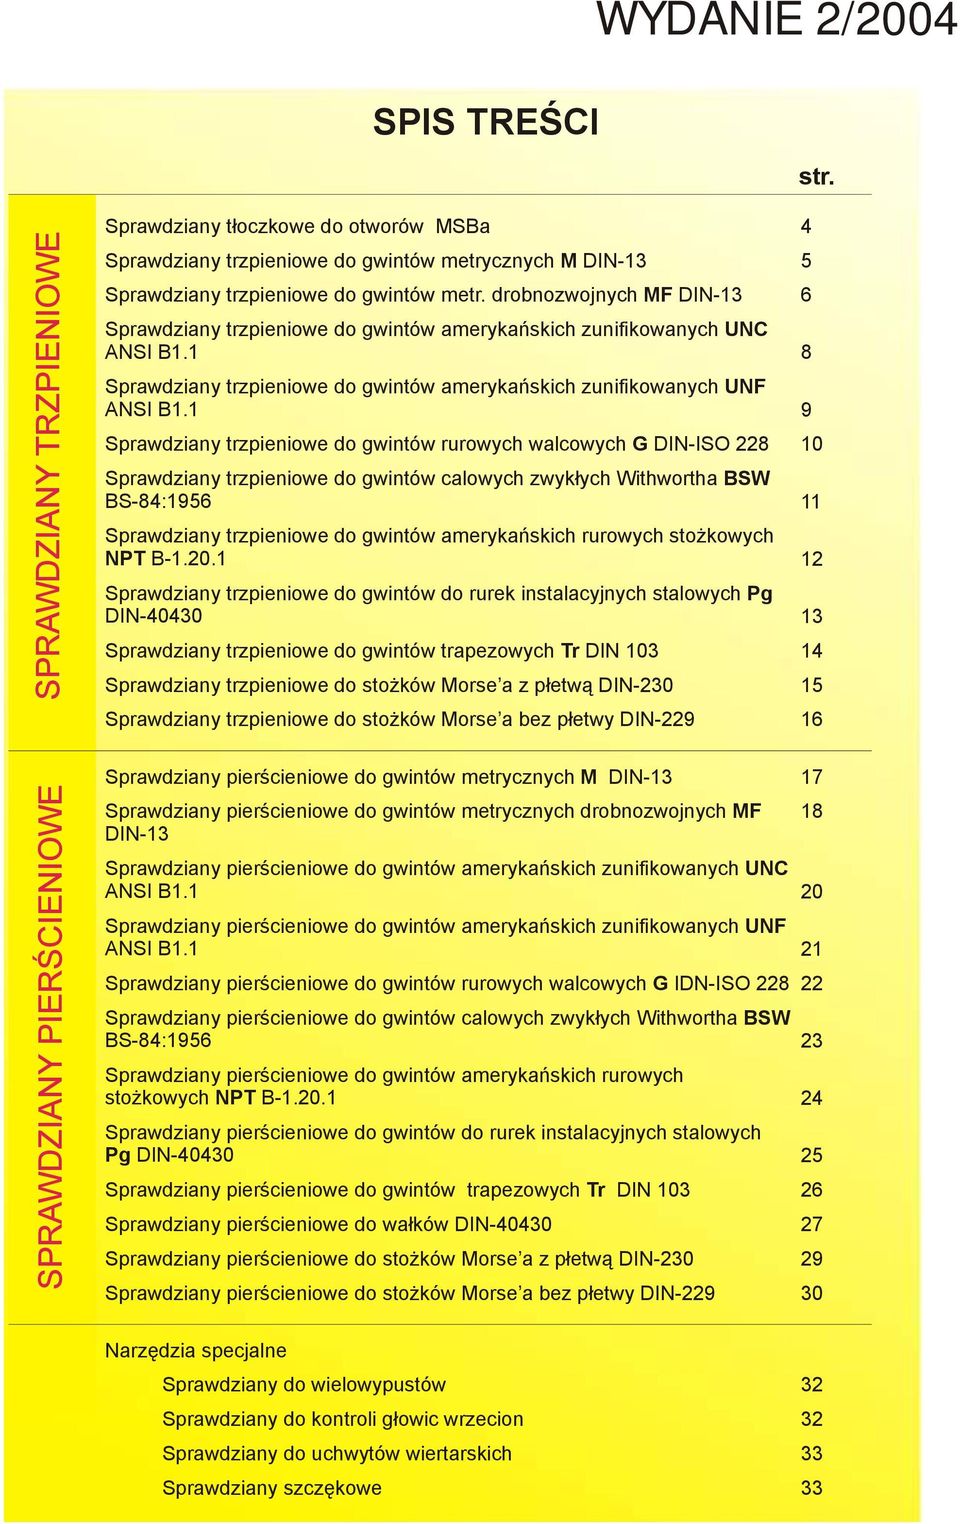 drobnozwojnych MF DIN-13 Sprawdziany trzpieniowe do gwintów amerykańskich zunifikowanych UNC ANSI B1.1 Sprawdziany trzpieniowe do gwintów amerykańskich zunifikowanych UNF ANSI B1.